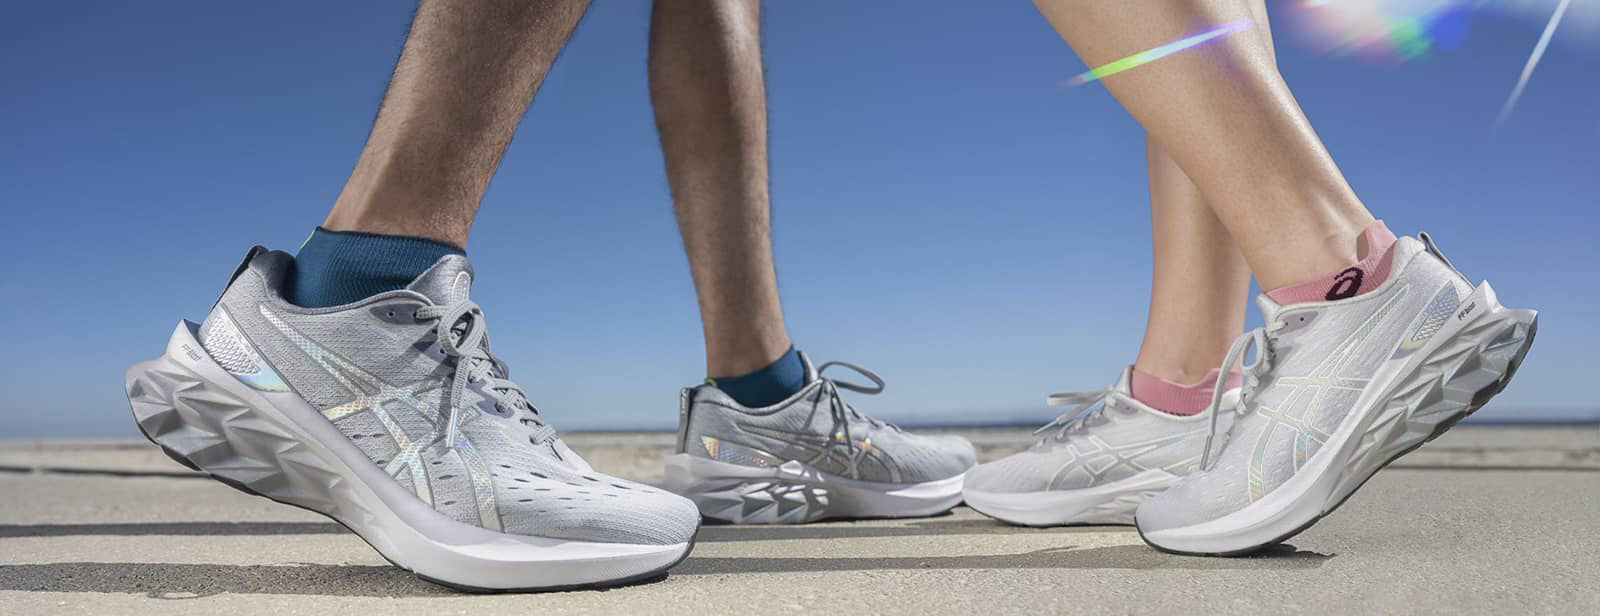 Come pulire le scarpe da running | ASICS IT